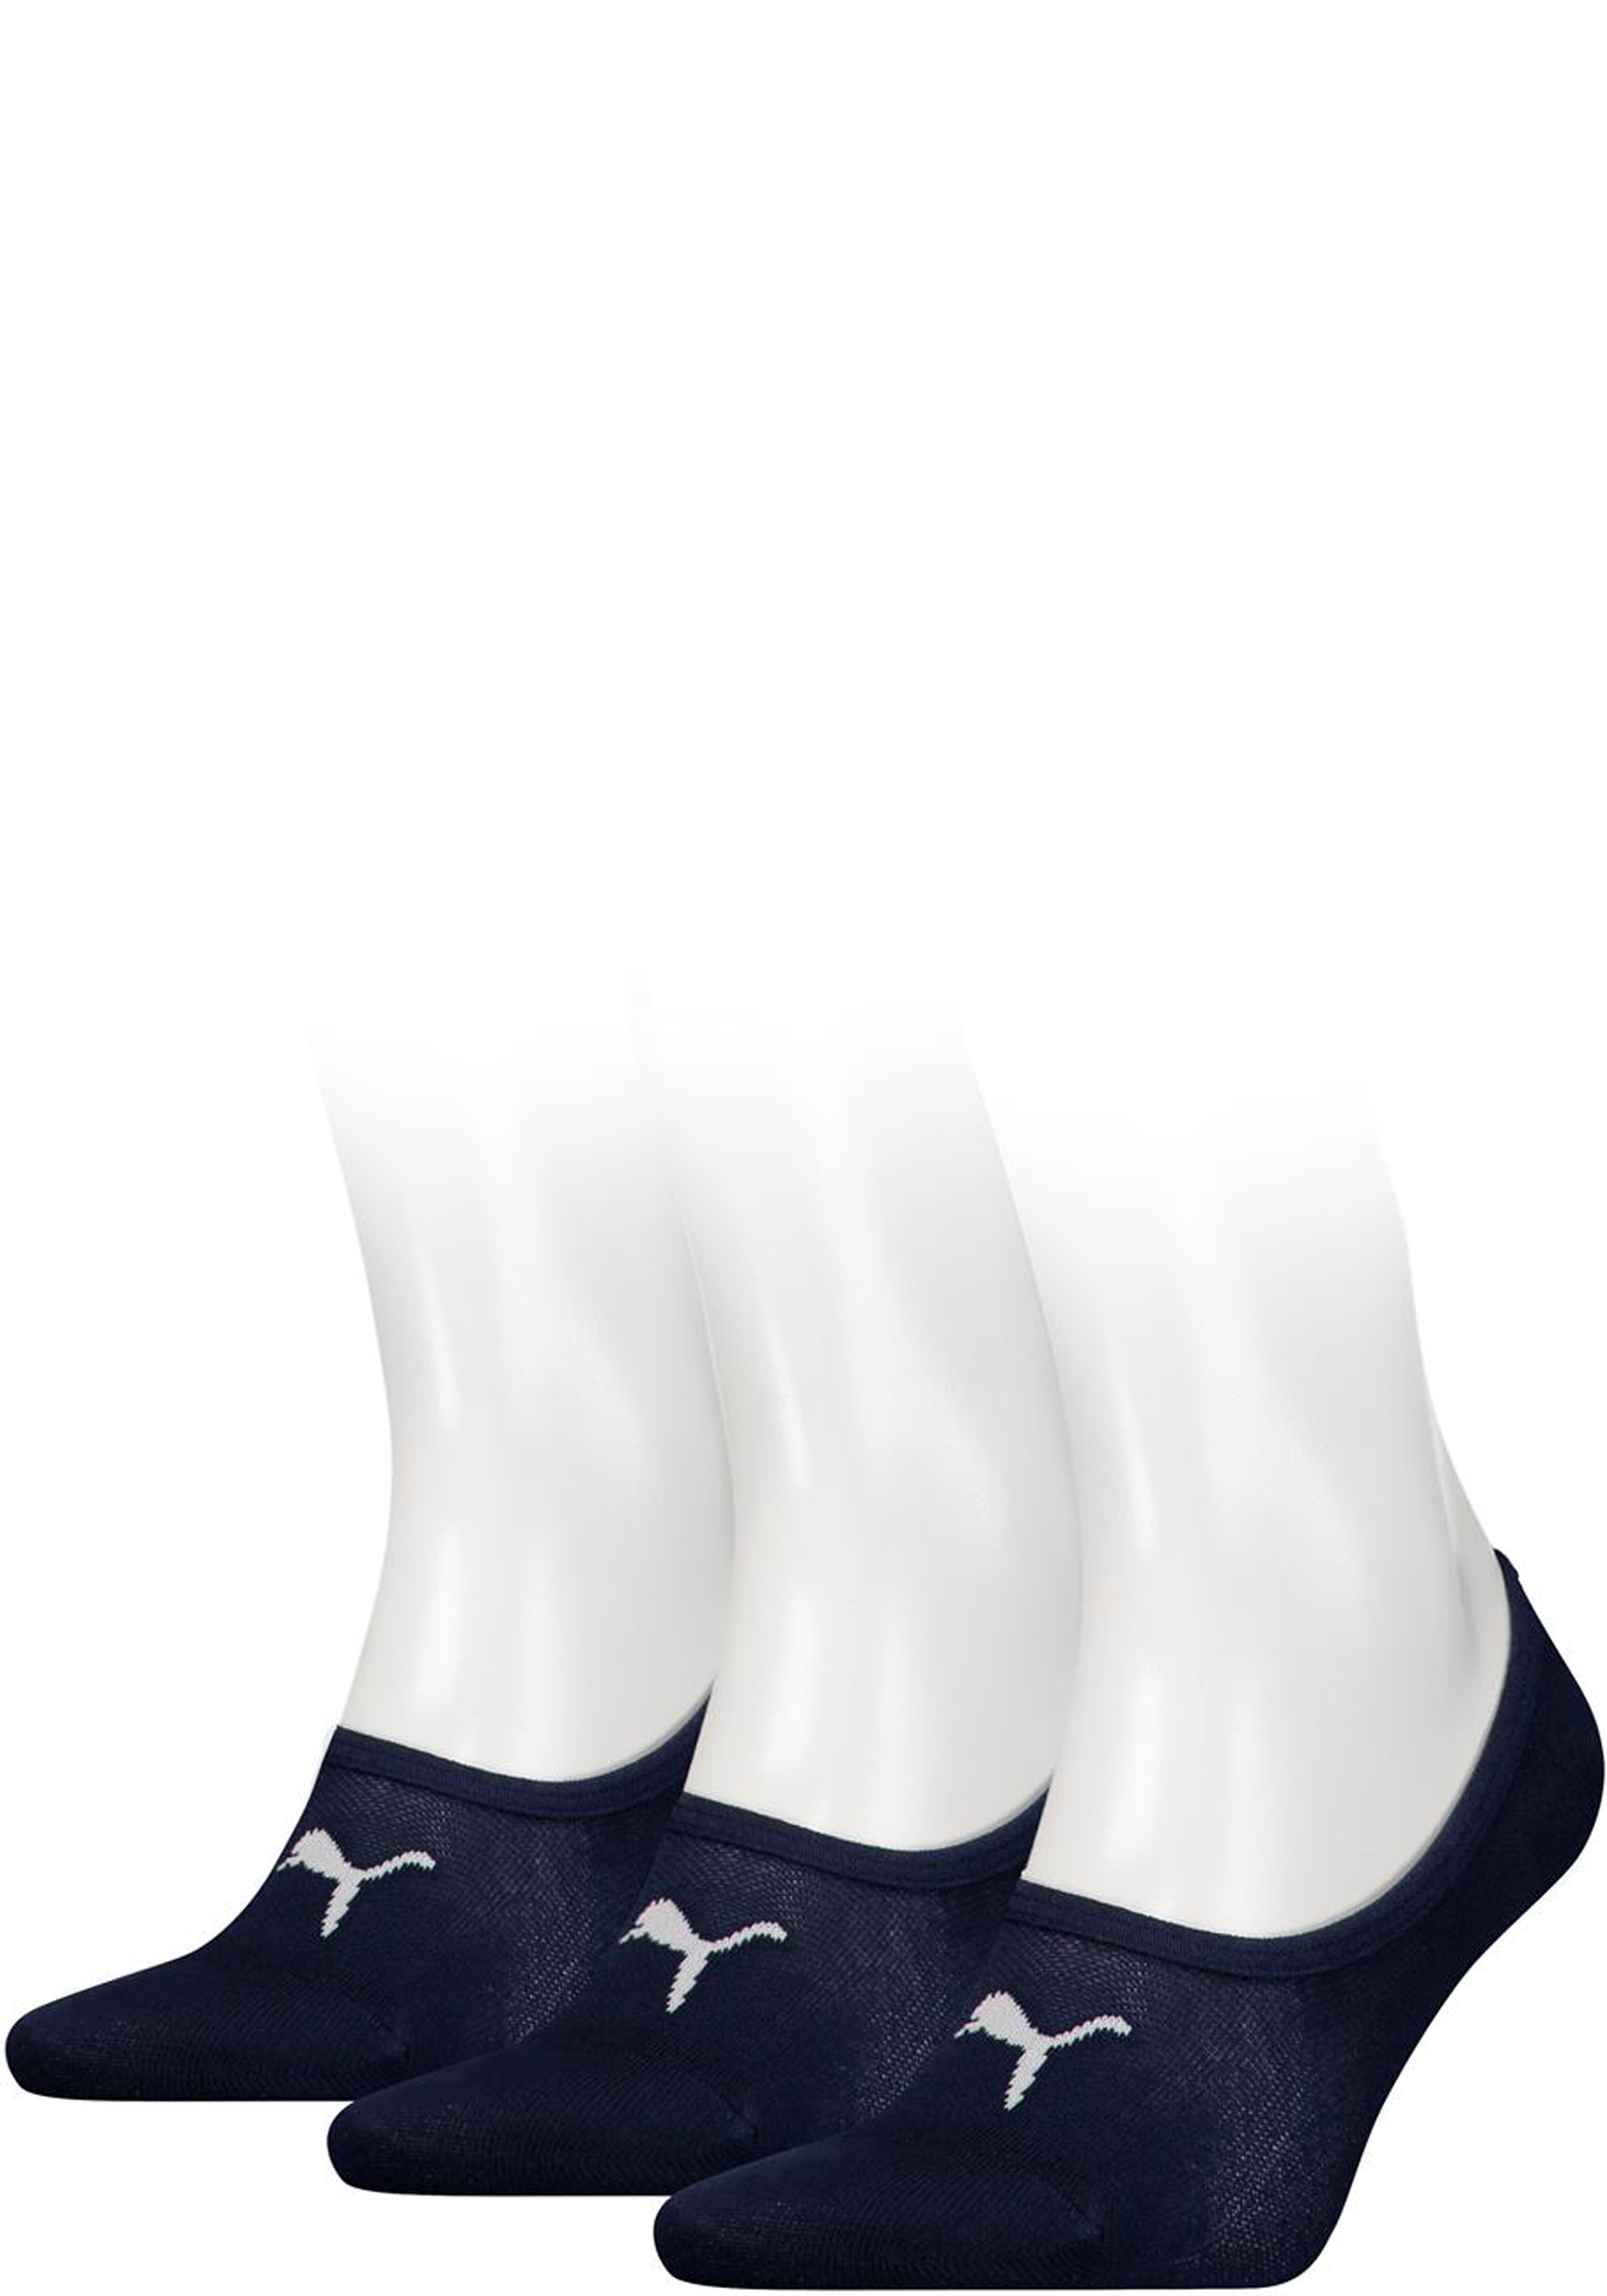 Puma Footie Unisex (3-pack), unisex onzichtbare sokken, donkerblauw